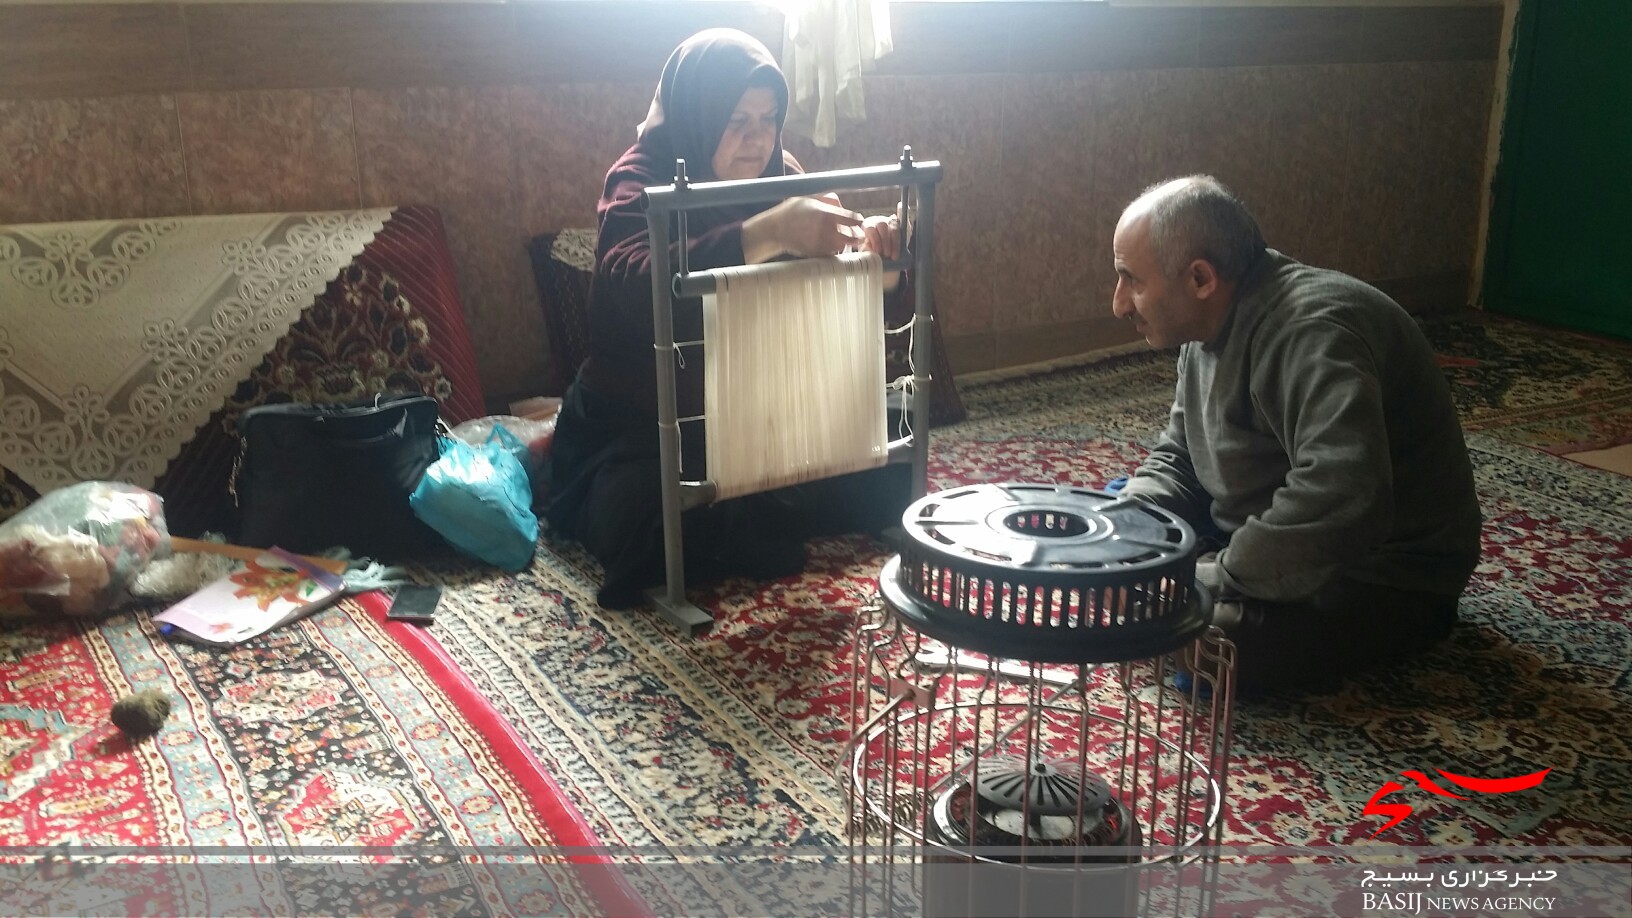 شبکه های تخصصی اشتغالزایی با مشارکت مردم در روستاهای محروم مازندران +تصاویر